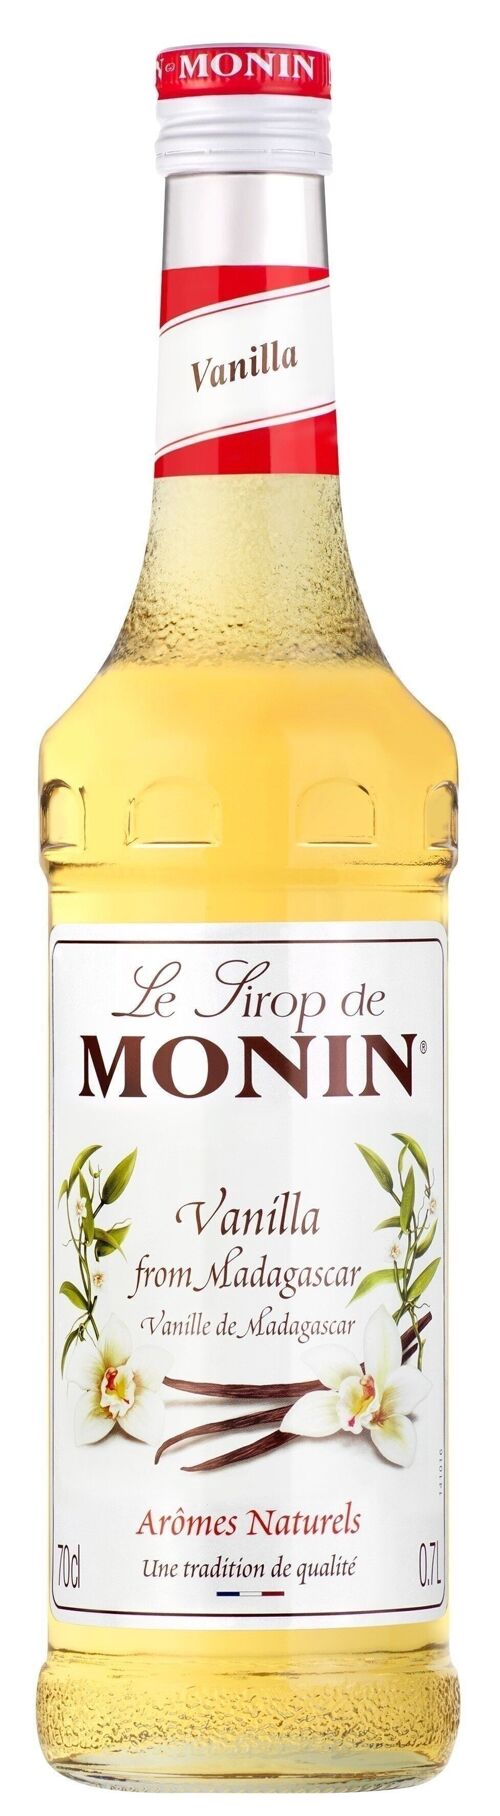 Sirop de Vanille MONIN pour aromatiser vos boissons chaudes de fête des mères  - Arômes naturels - 70cl